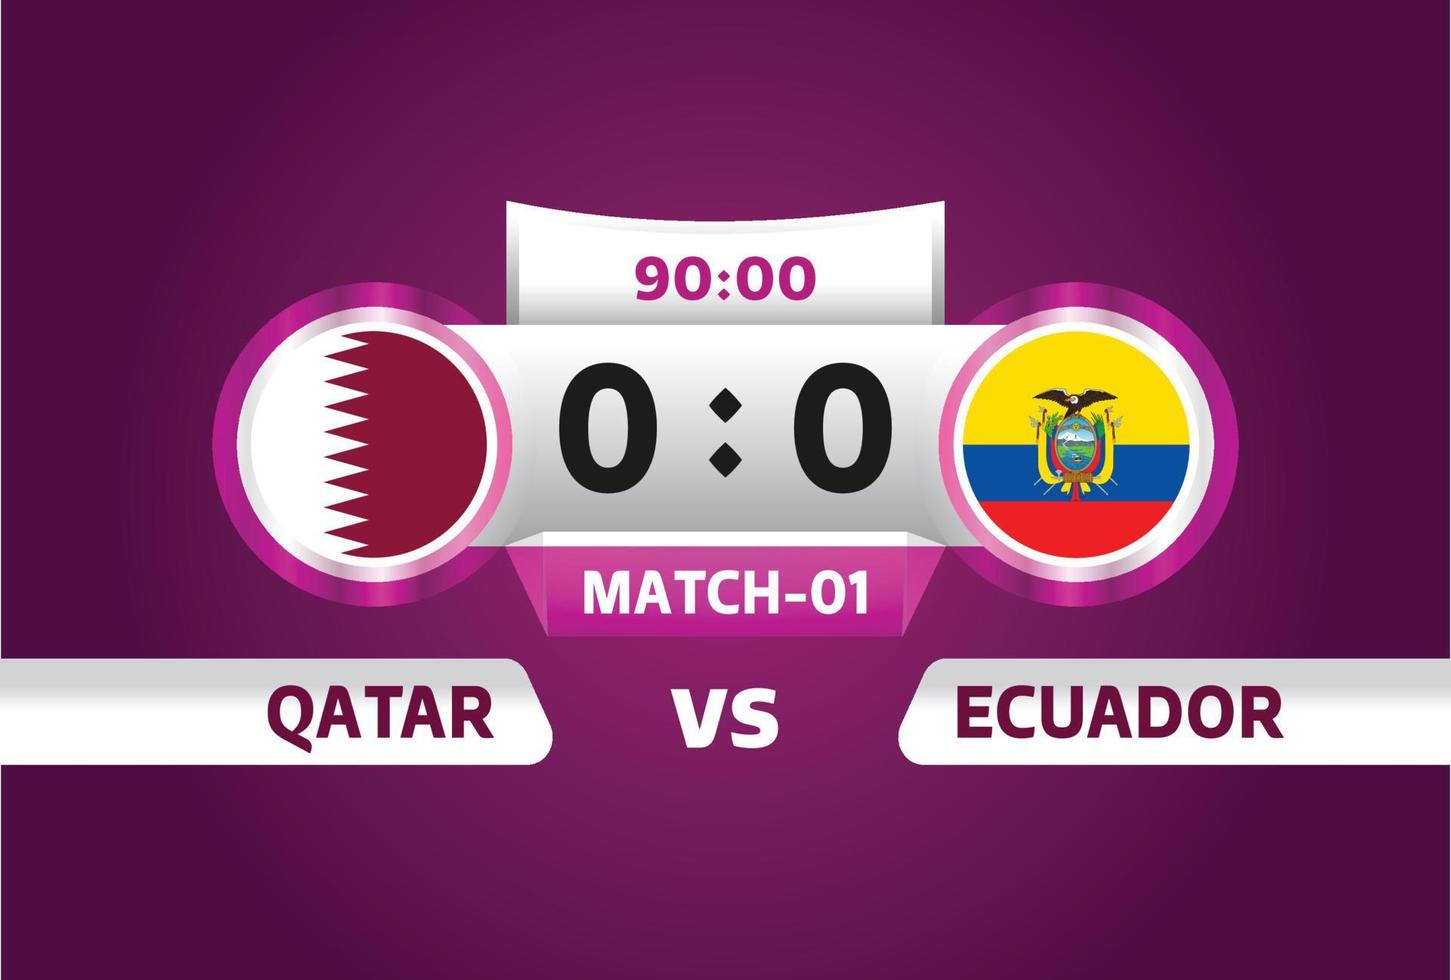 qatar vs ecuador, futbol 2022, grupo a. partido de campeonato mundial de fútbol versus antecedentes deportivos de introducción de equipos, afiche final de la competencia de campeonato, ilustración vectorial. vector profesional